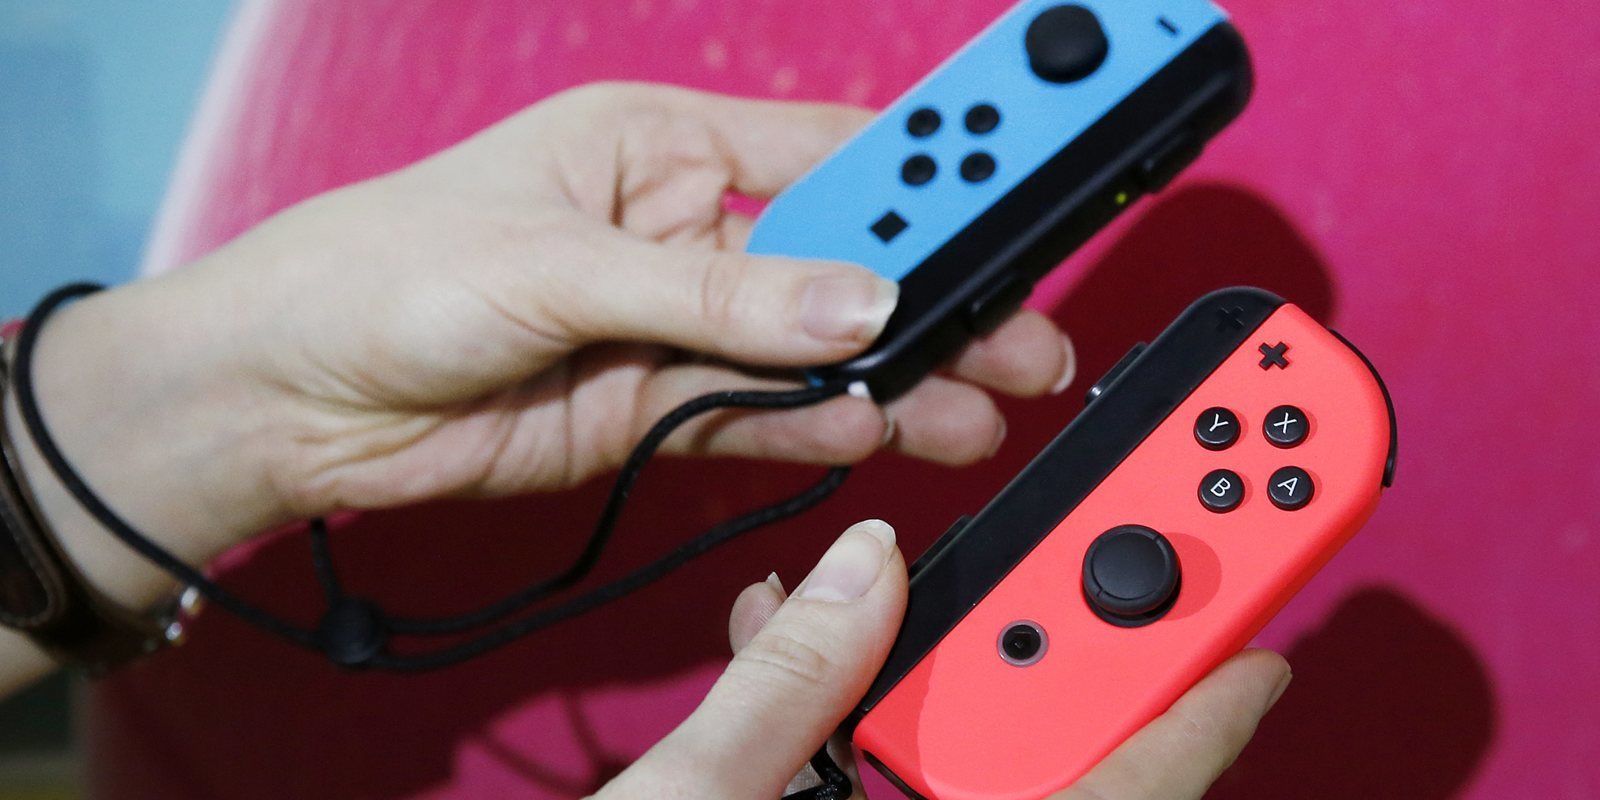 Empieza a proliferar la venta de Joy-Con falsos de Nintendo Switch en Internet